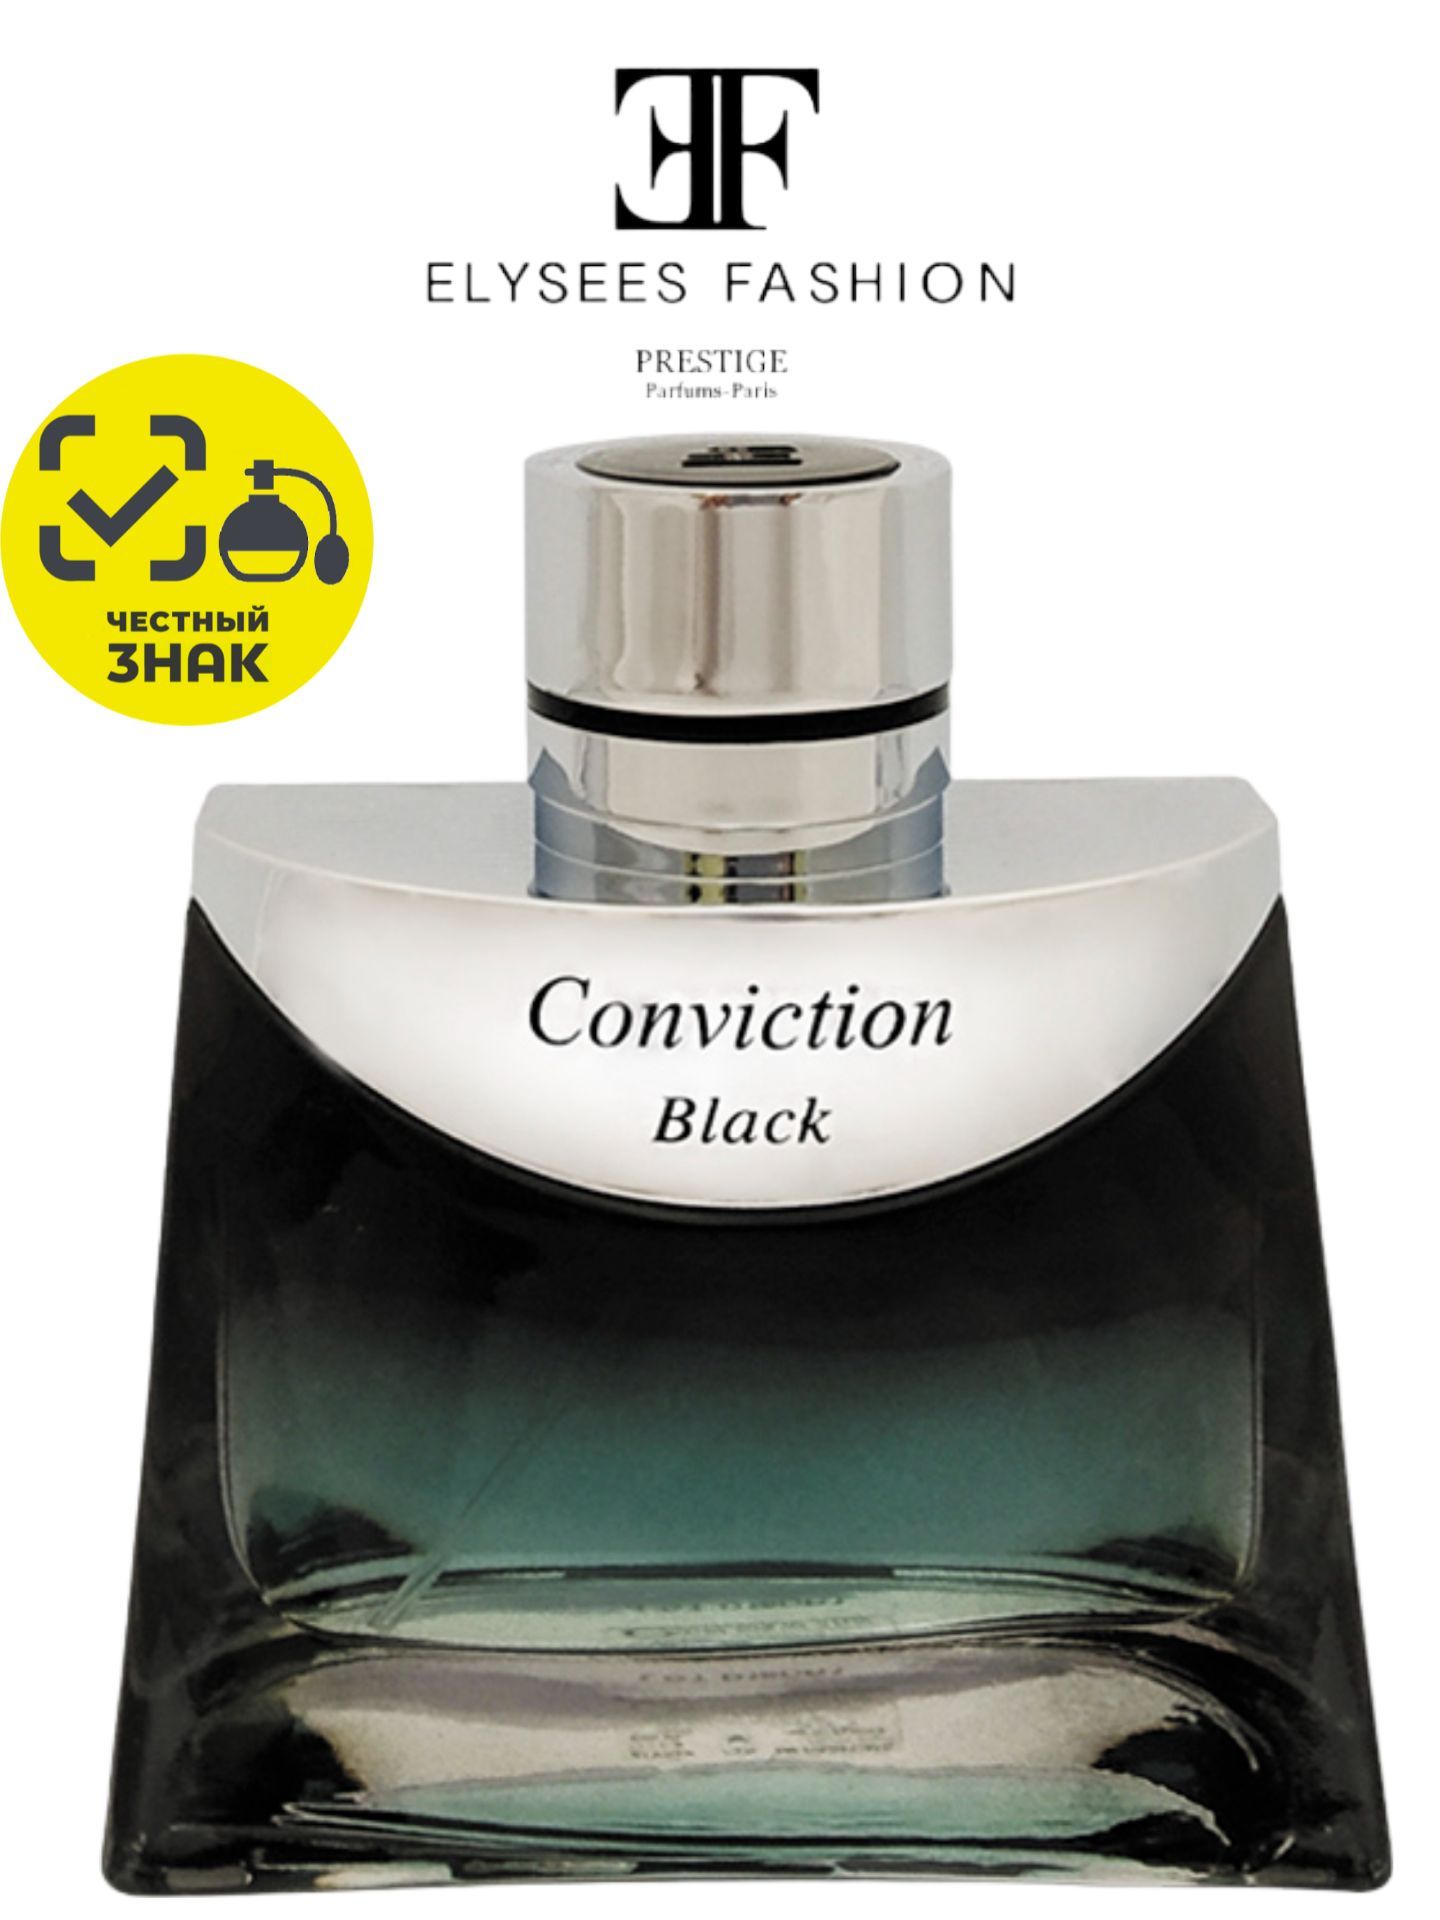 Conviction Sport Elysees Fashion одеколон — аромат для мужчин